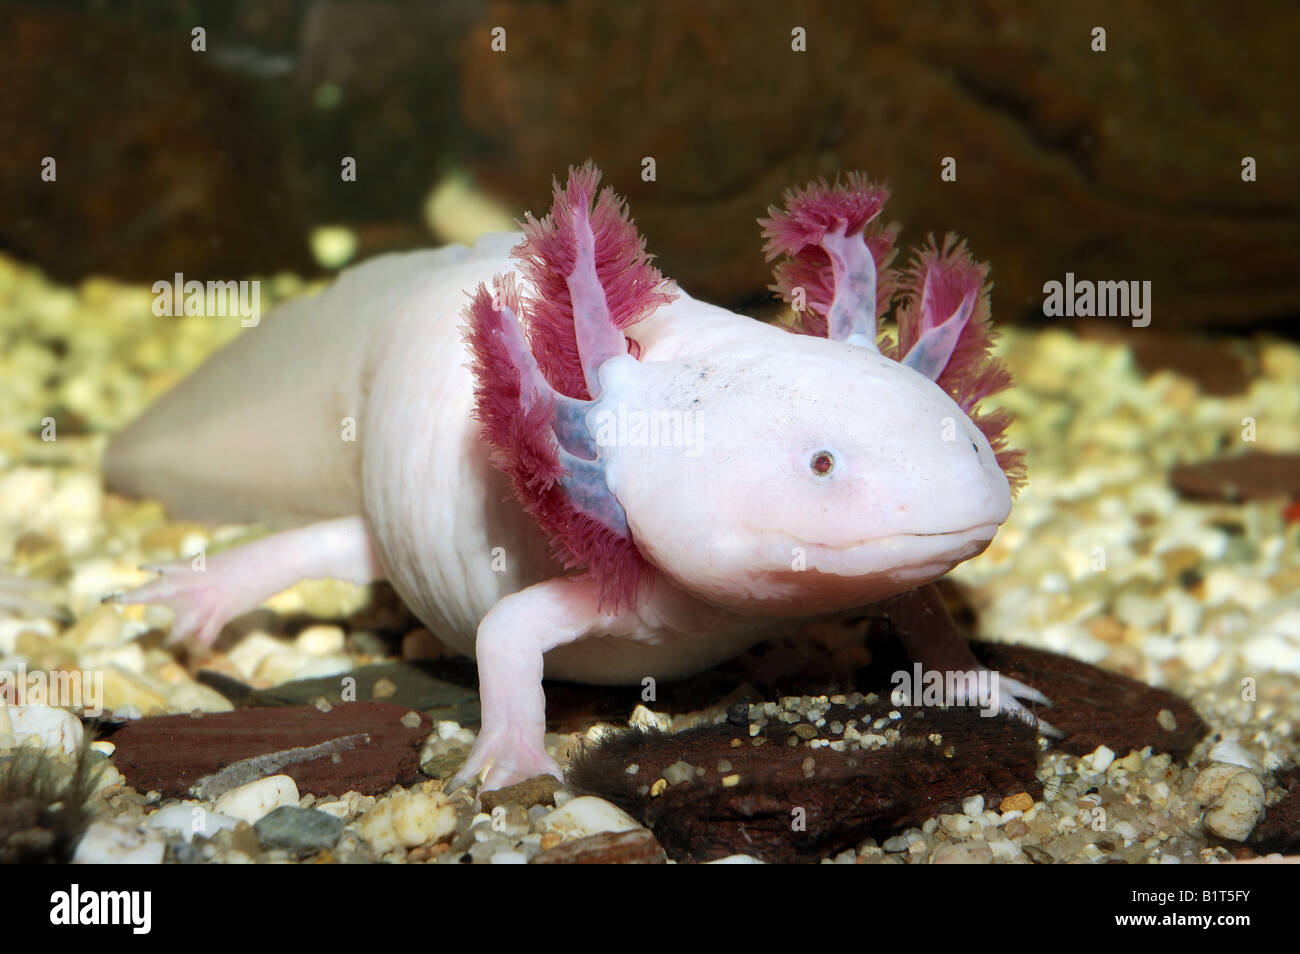 Axolotl (Ambystoma mexicanum) under water Stock Photo